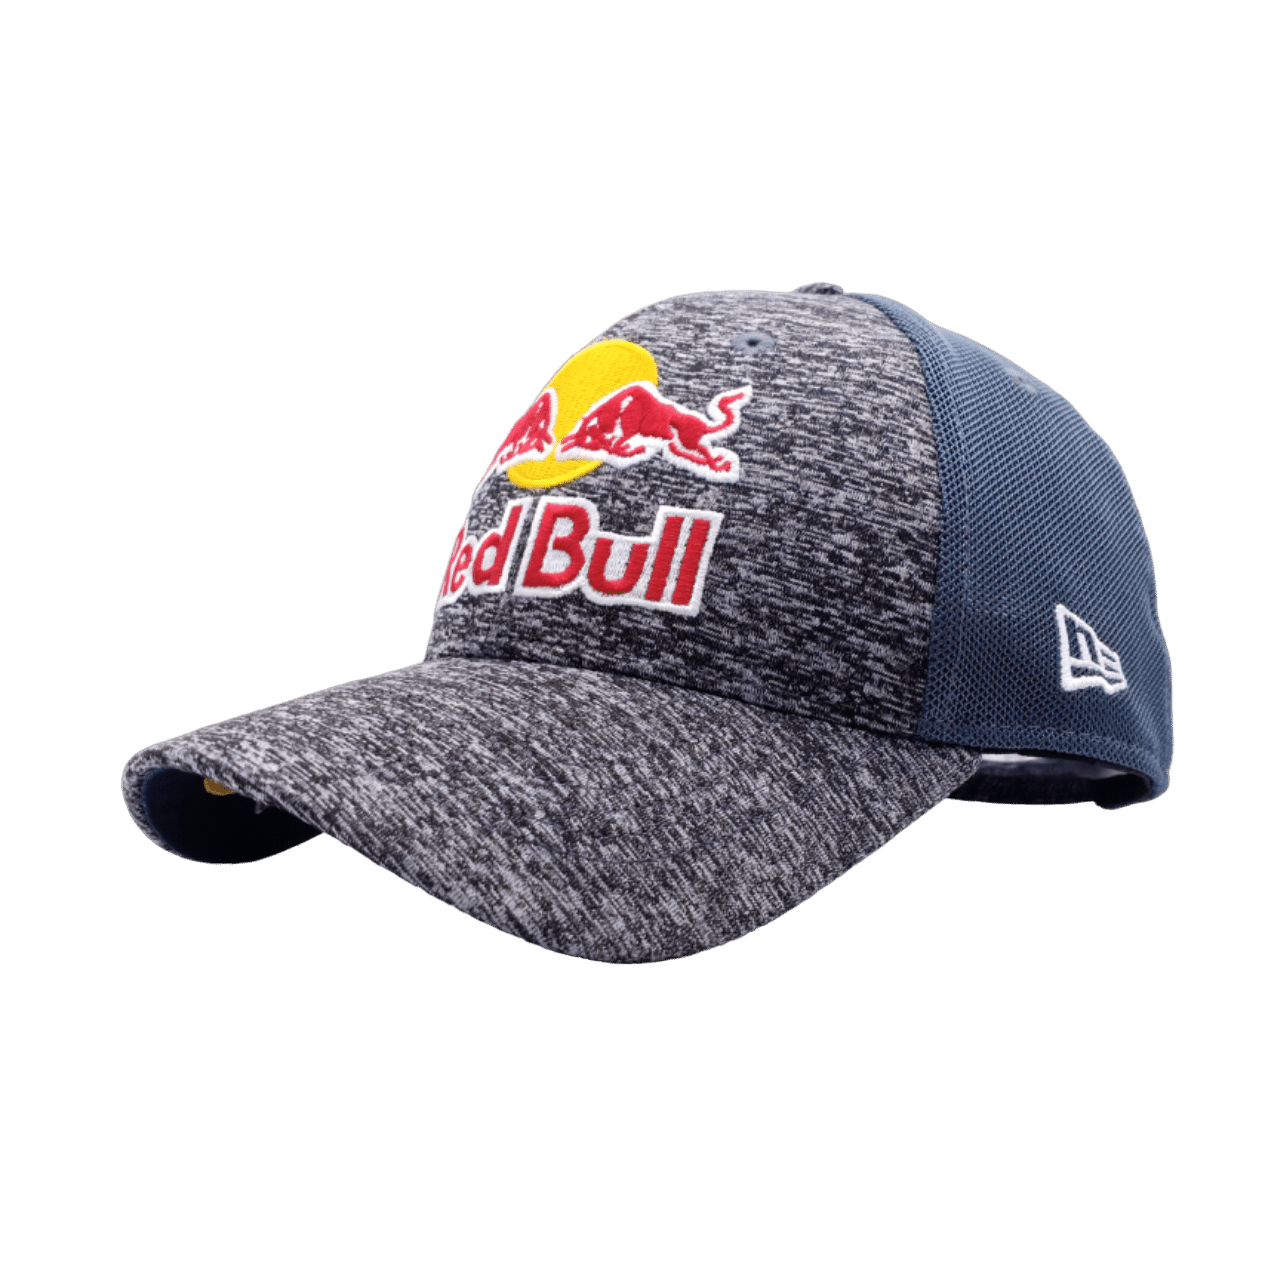 New Era Red Bull White Racing Cap - WEAR MY HAT